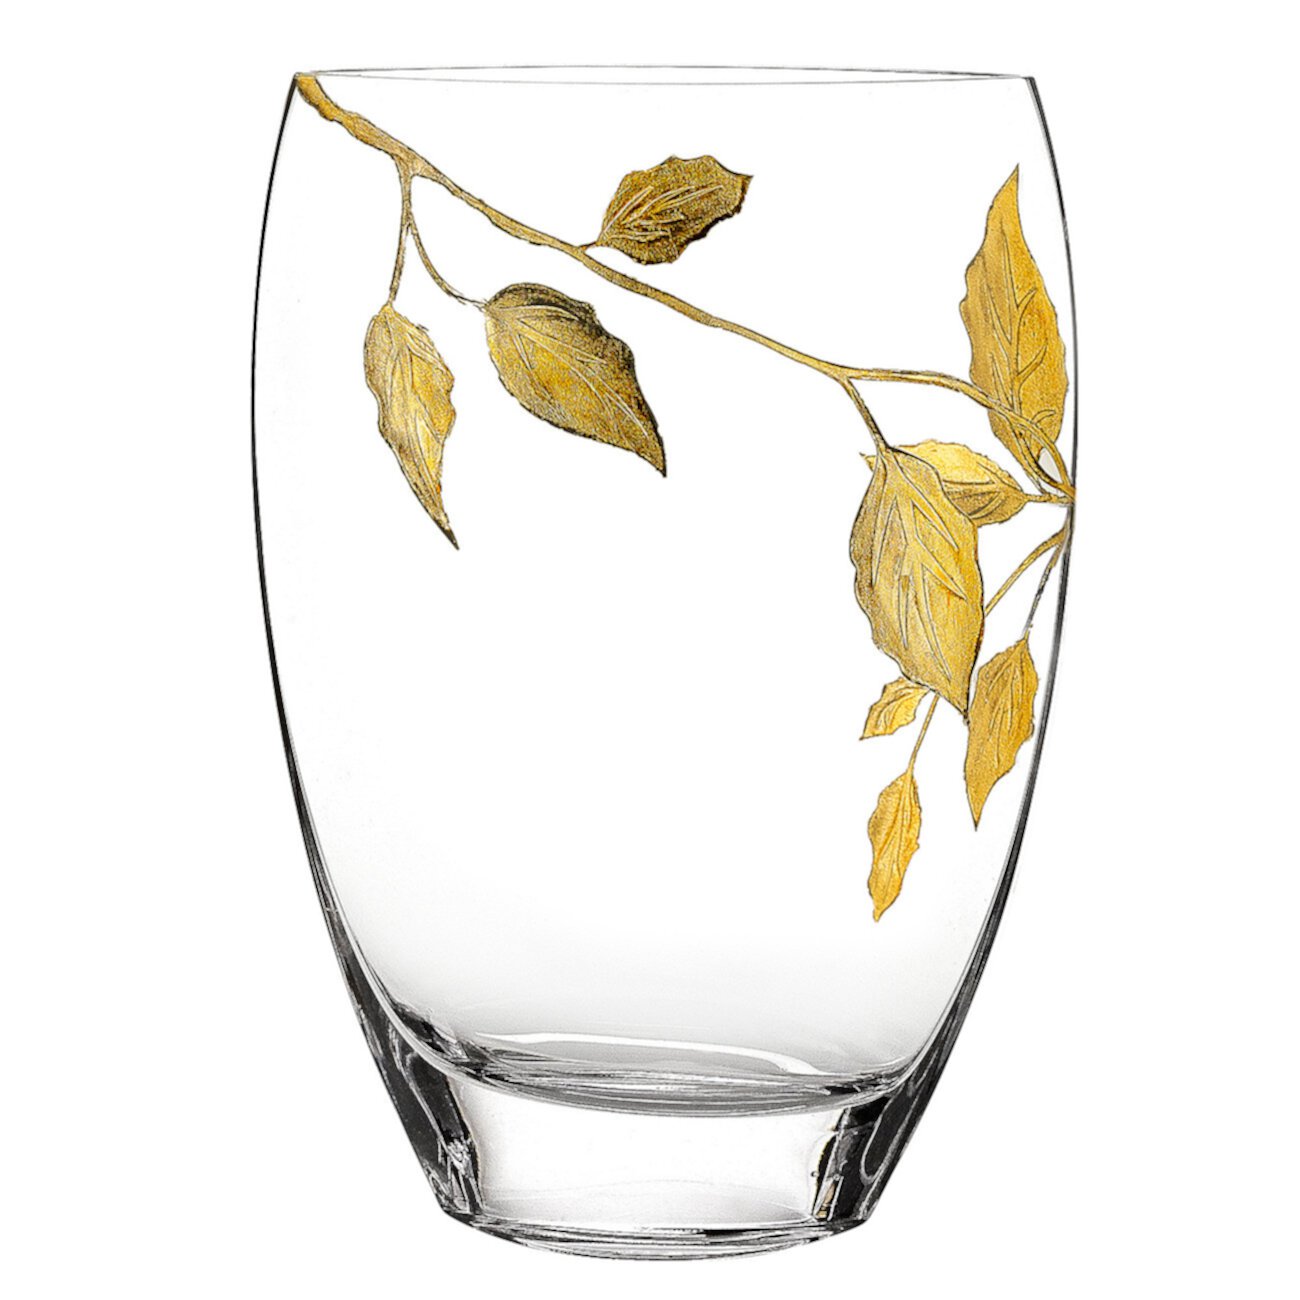 Золотые листья 12-дюймовая ваза Badash Crystal